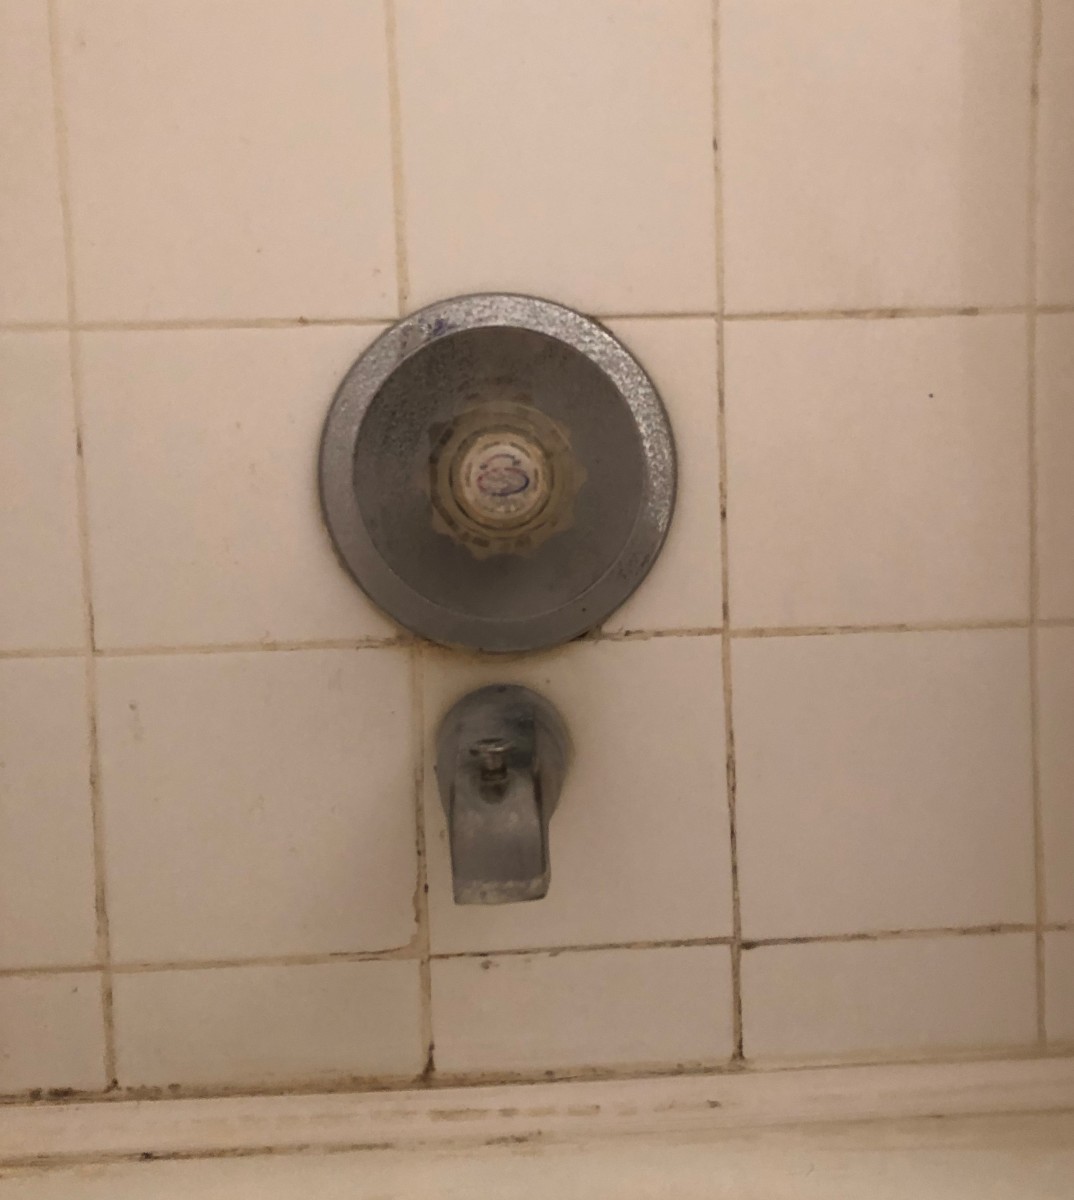 Replace A Single Handle Shower Valve, Replace Bathtub Faucet Stem